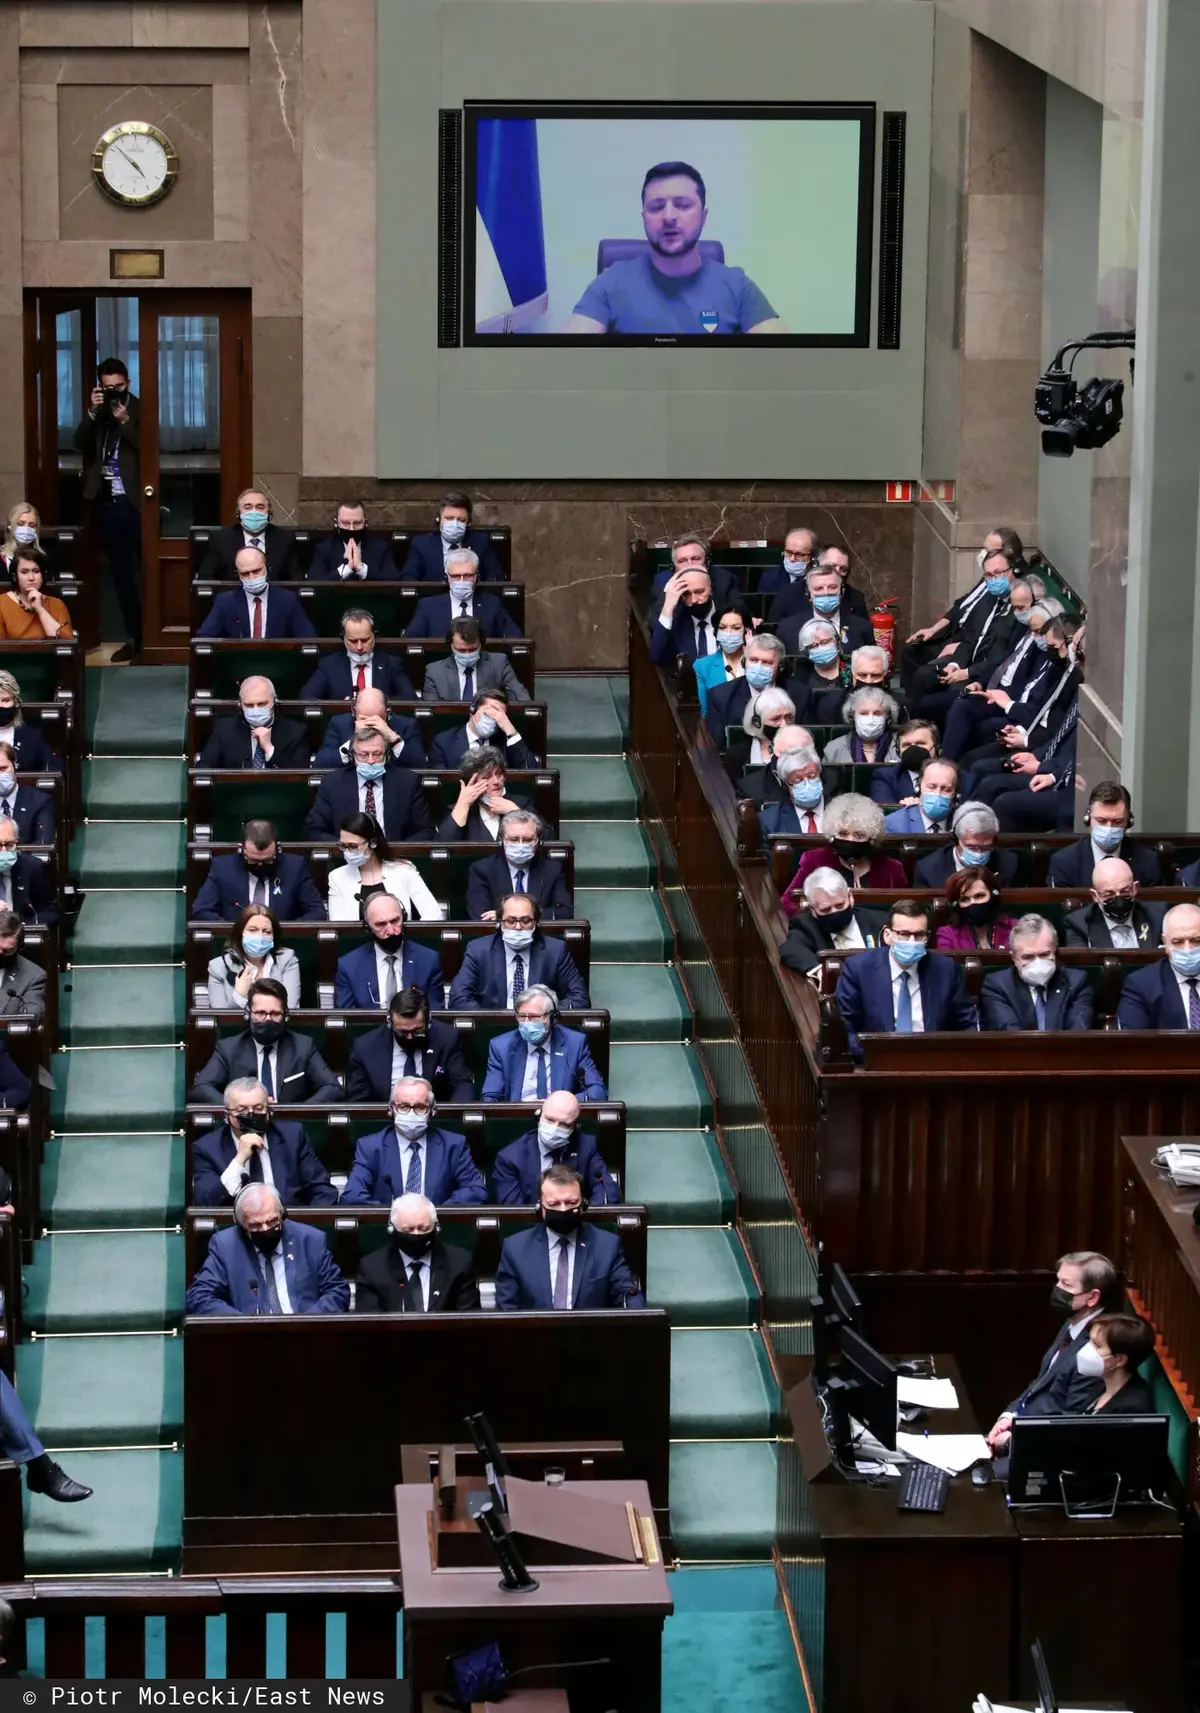 Uroczyste Zgromadzenie Posłów i Senatorów, przemawiający Wołodymyr Zełenski.